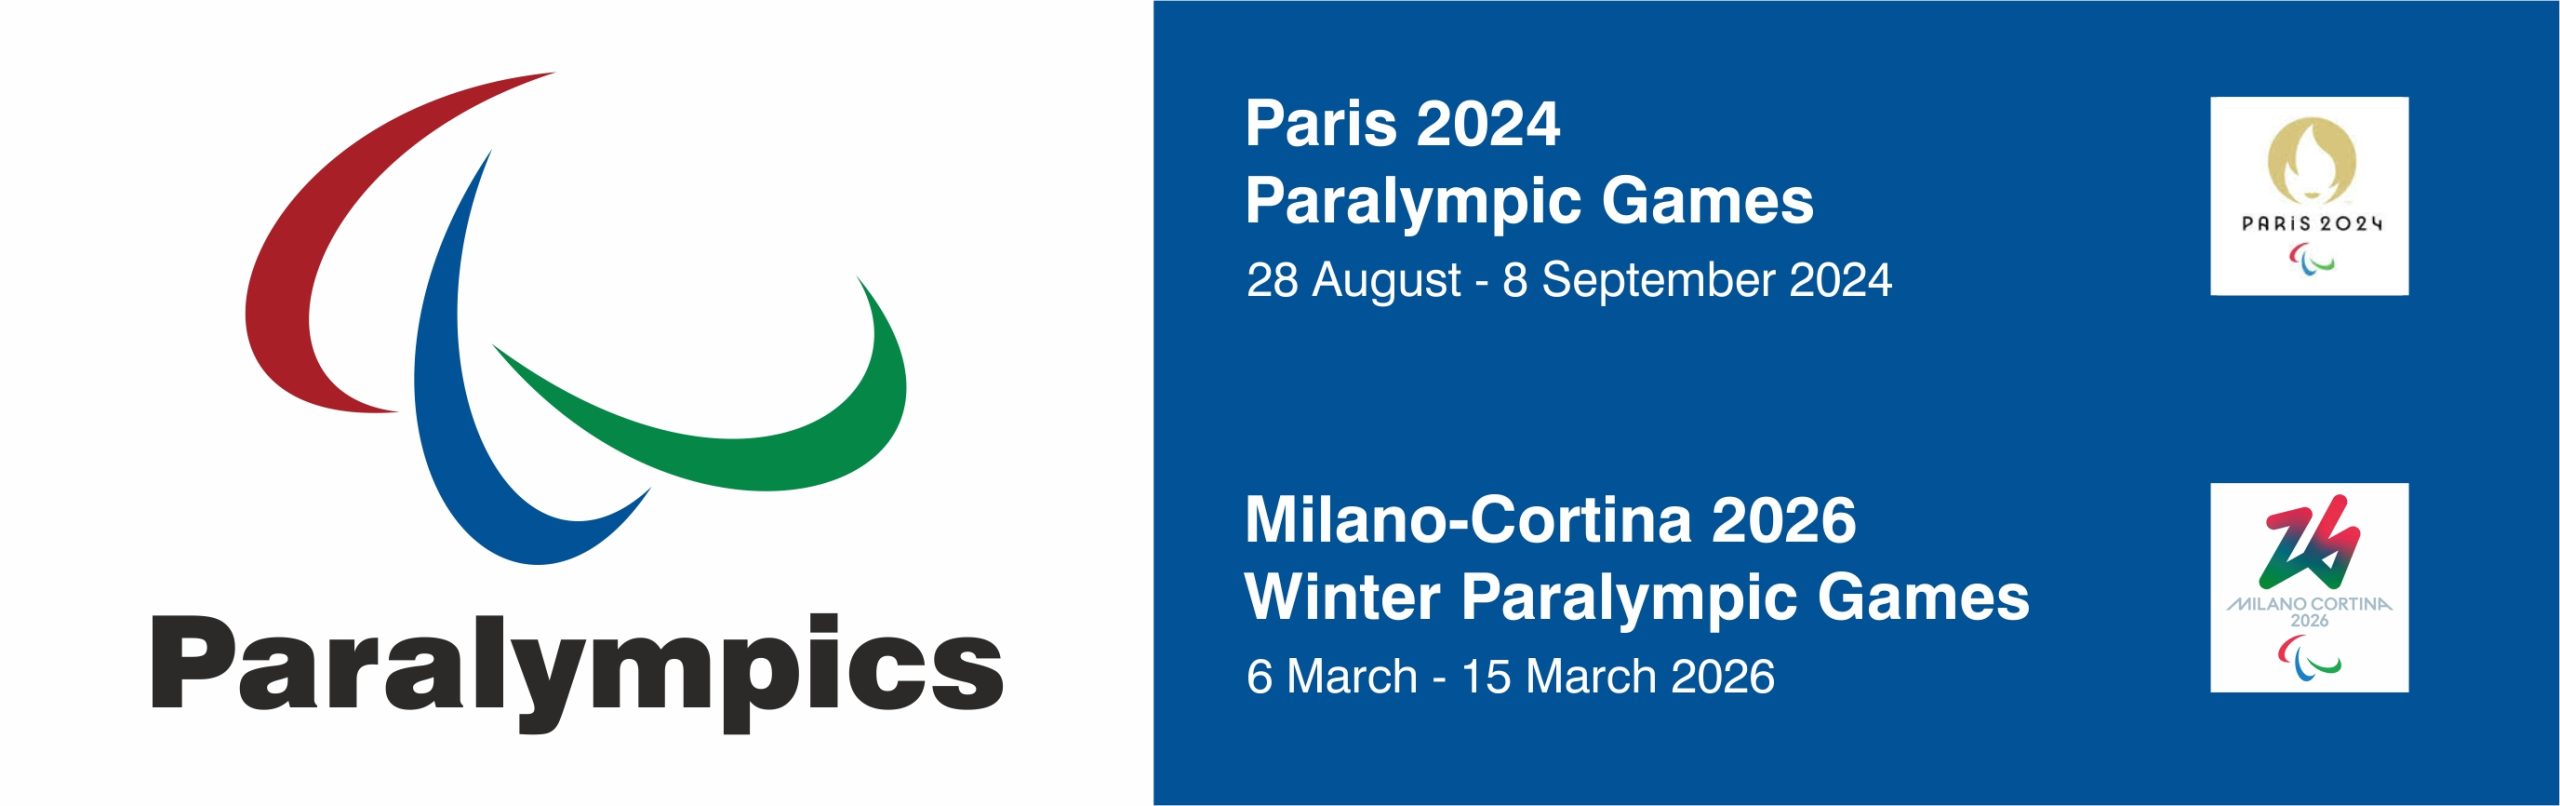 paris 2024 paralympic games milano cortina 2026 winter paralympic games